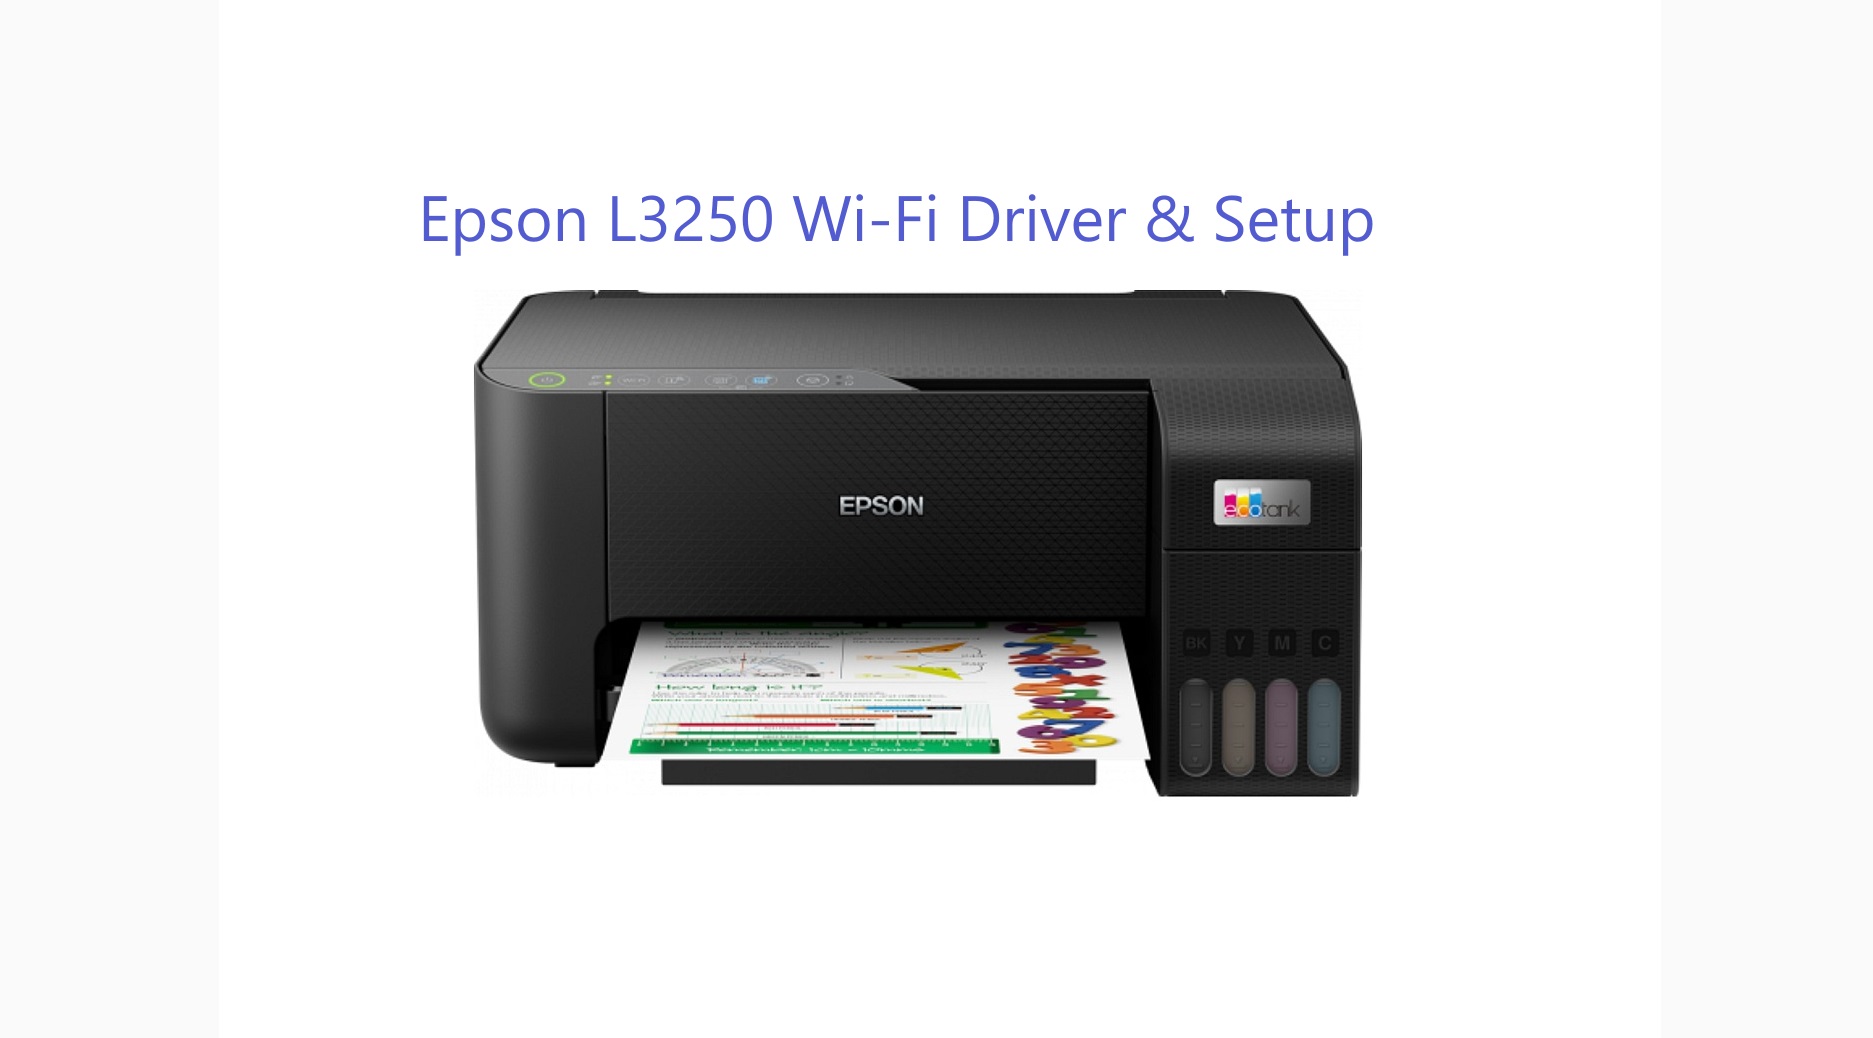 Epson L3250 Wi-Fi Driver